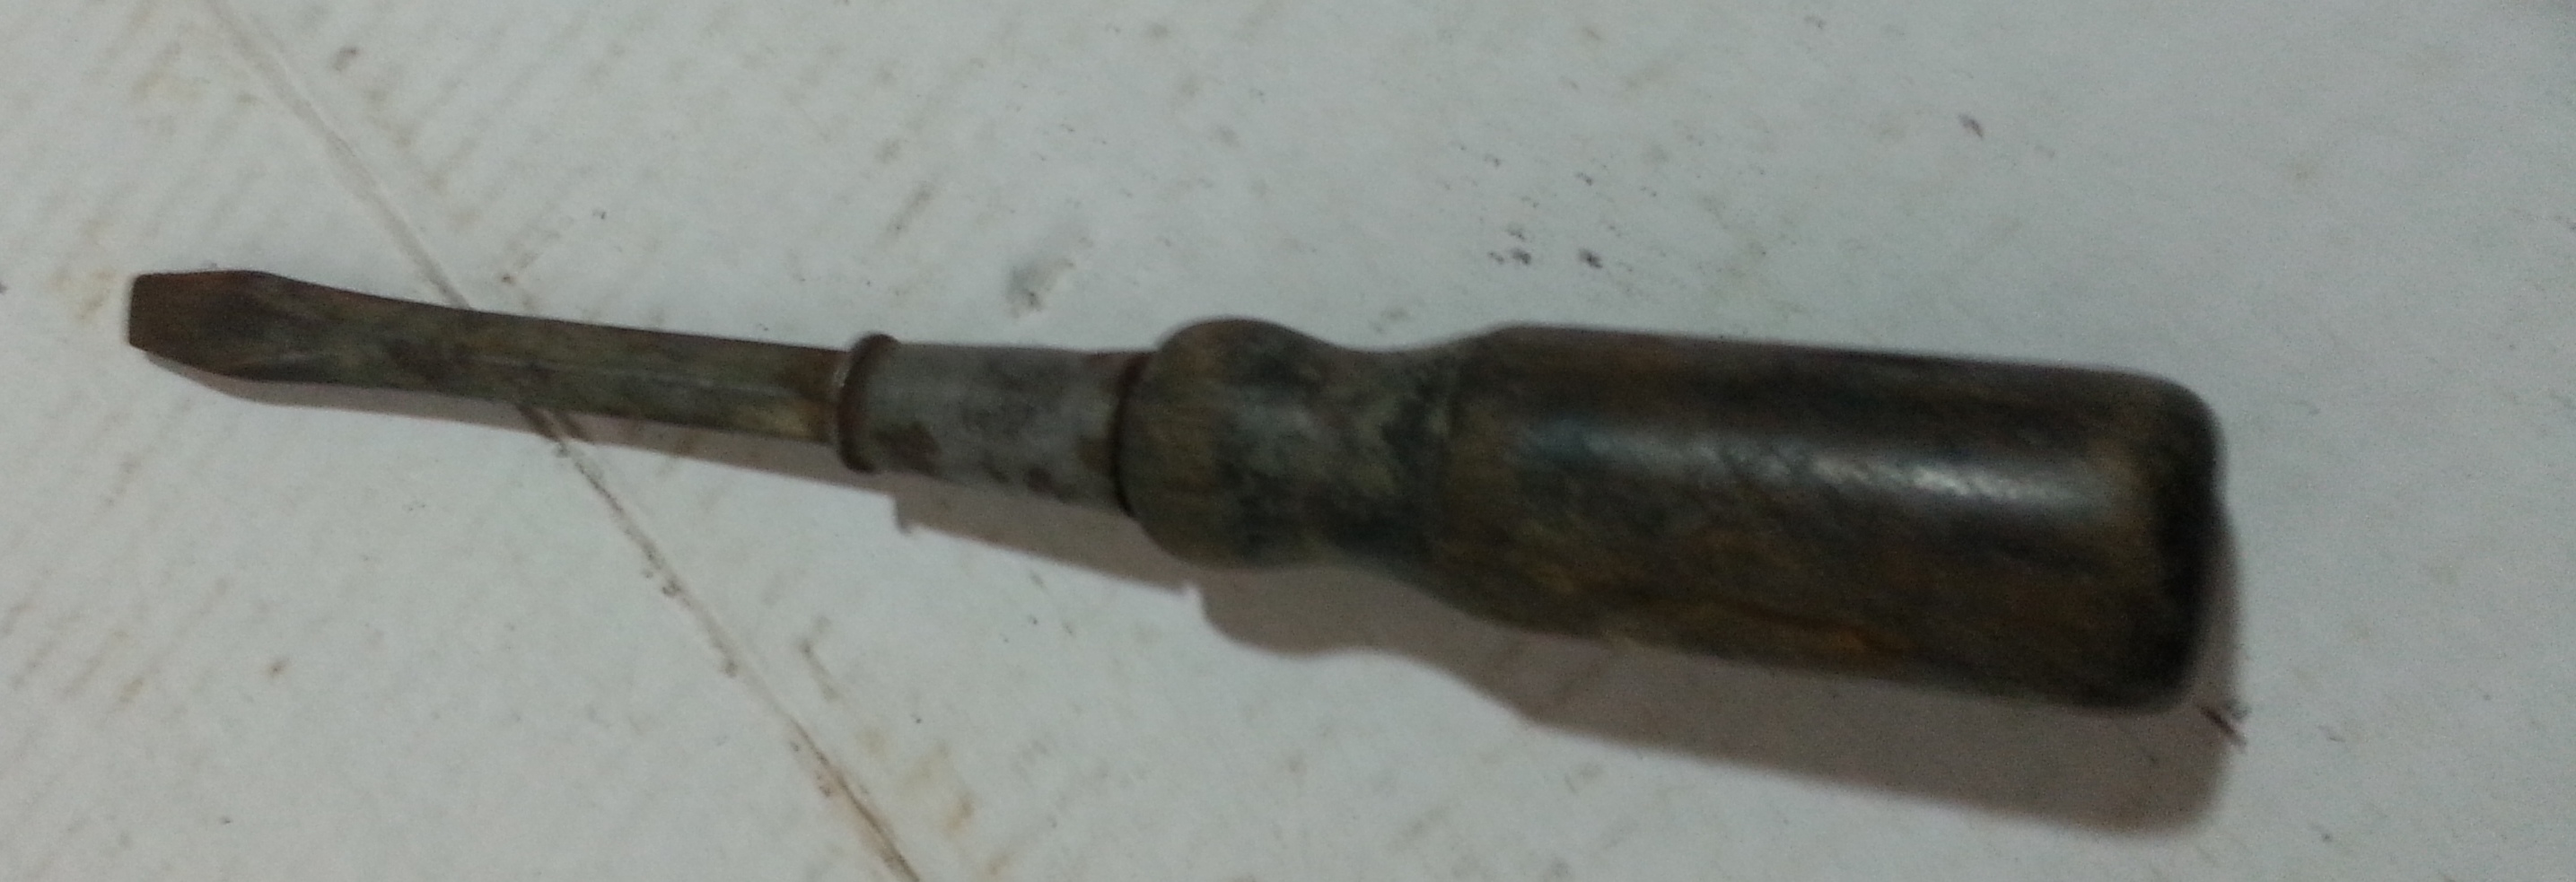 antique screw driver